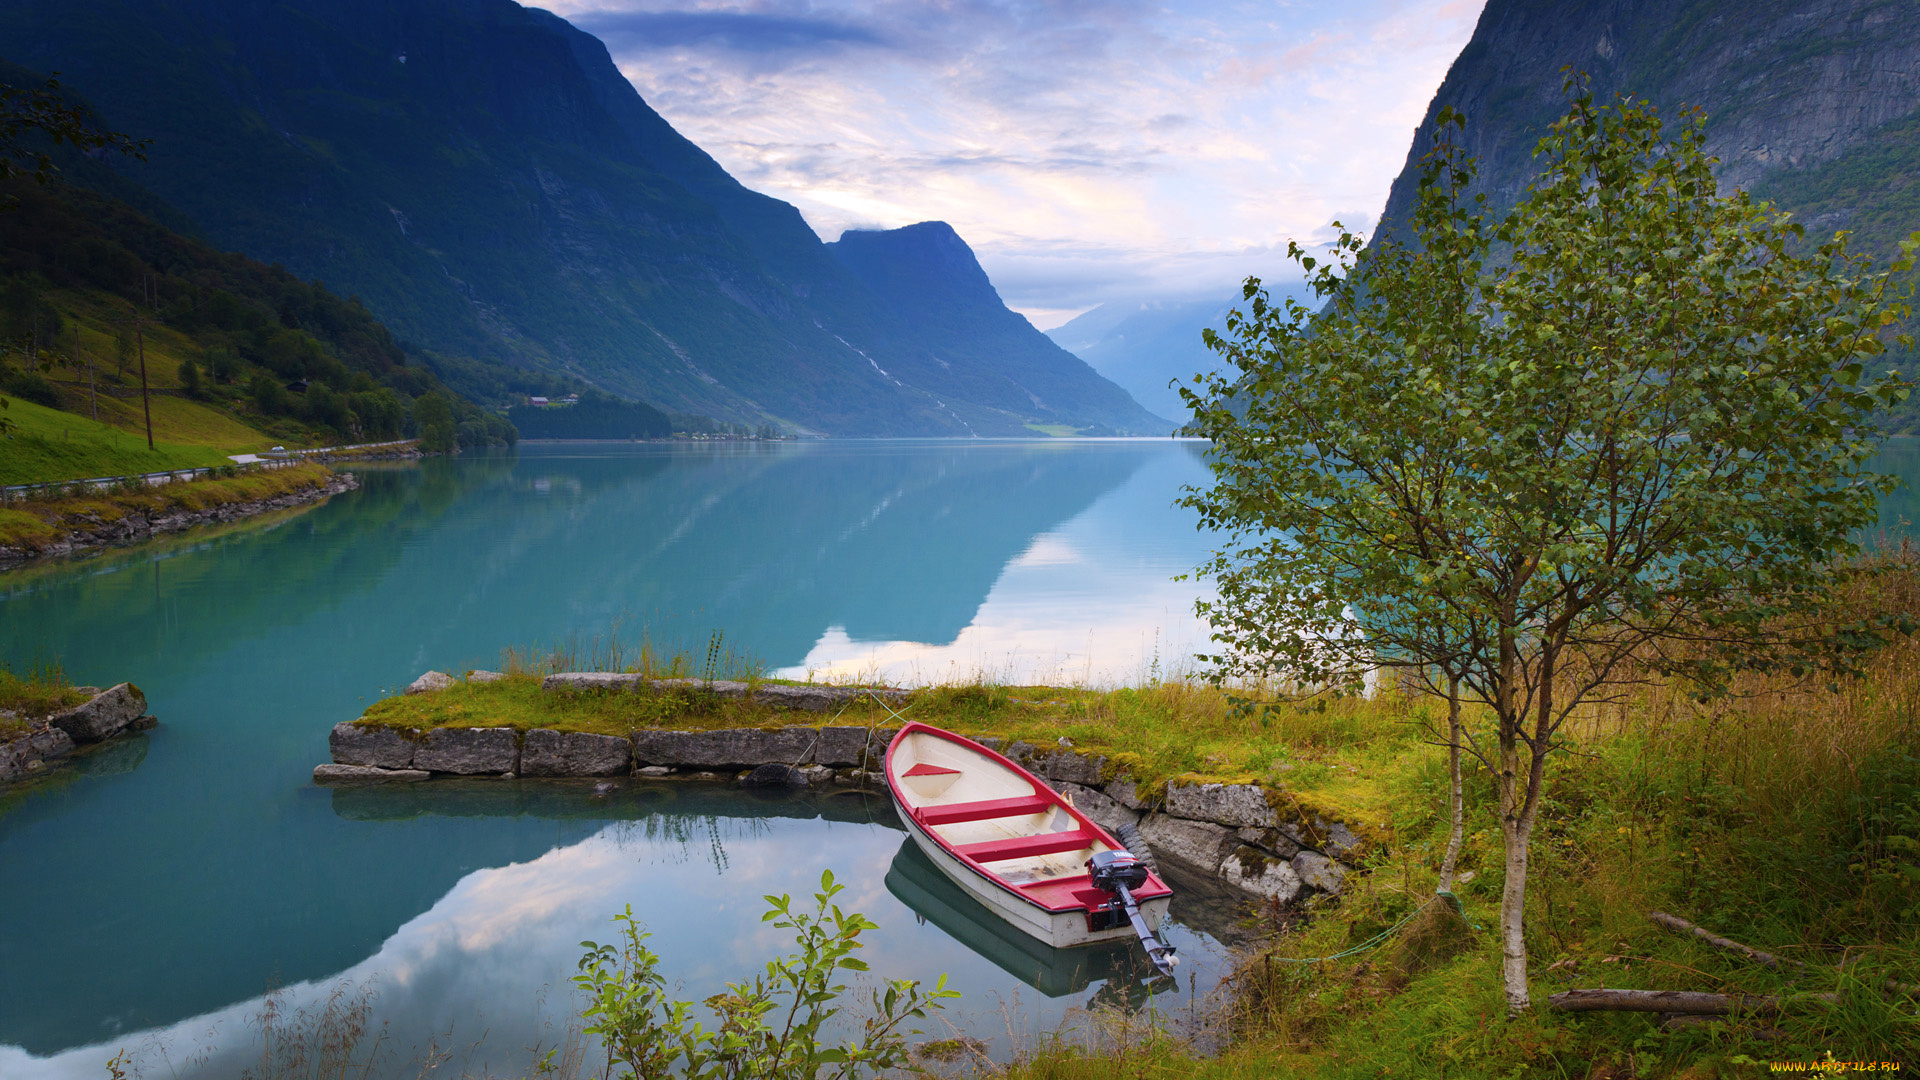 корабли, лодки, шлюпки, озеро, лодка, norway, норвегия, горы, берёзки, деревья, пейзаж